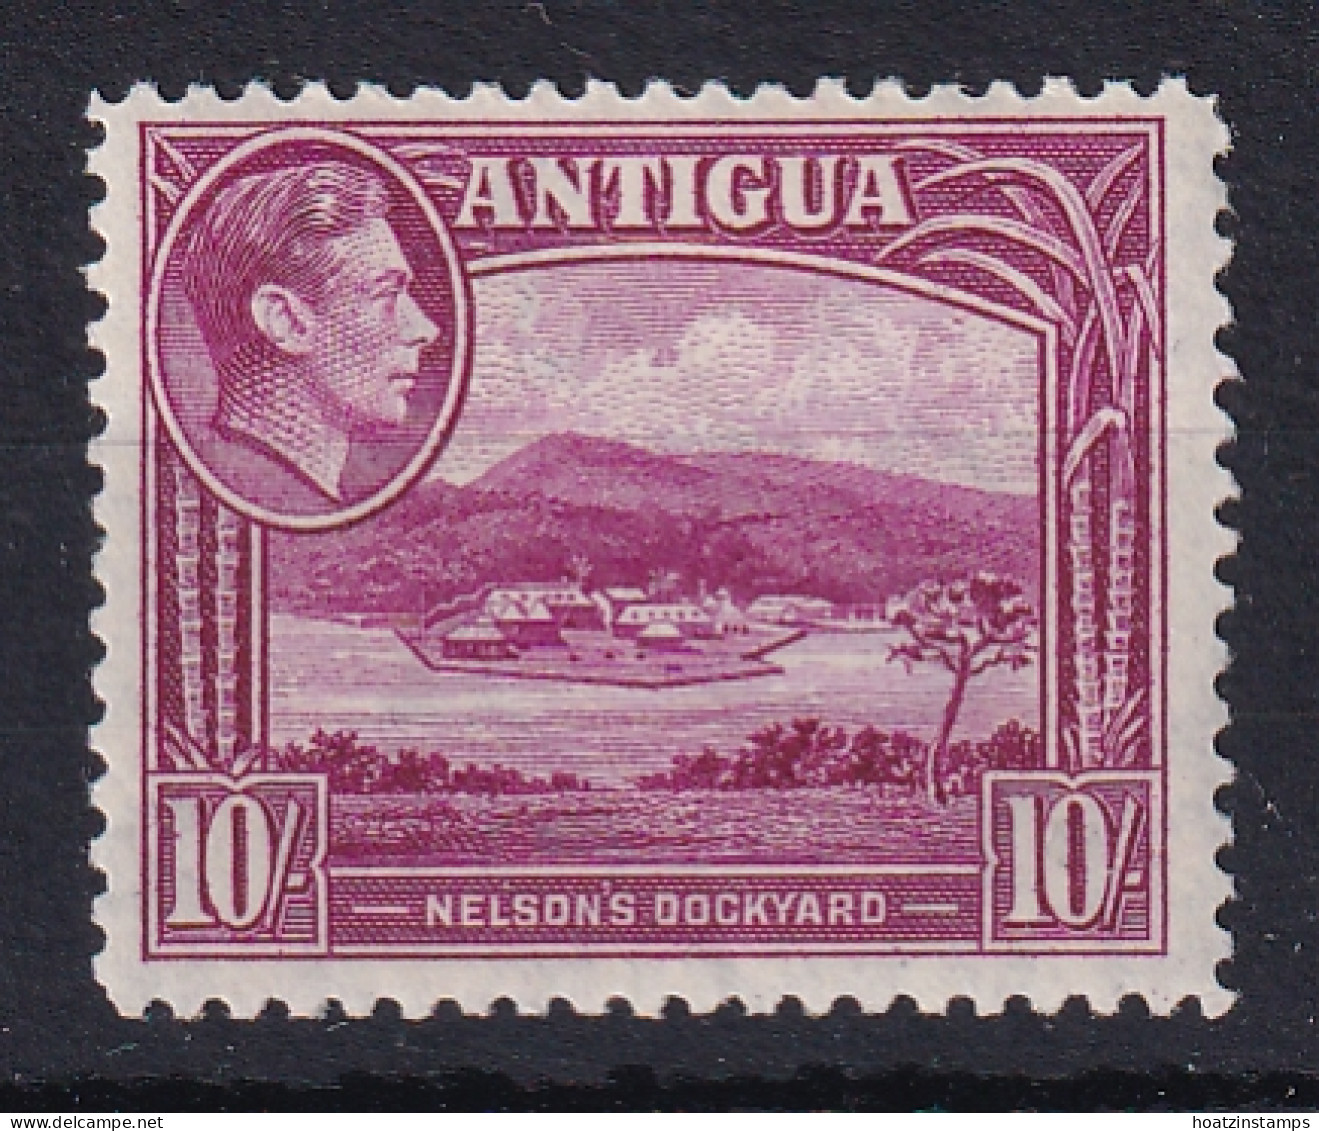 Antigua: 1938/51   KGVI    SG108    10/-      MH - 1858-1960 Colonia Britannica